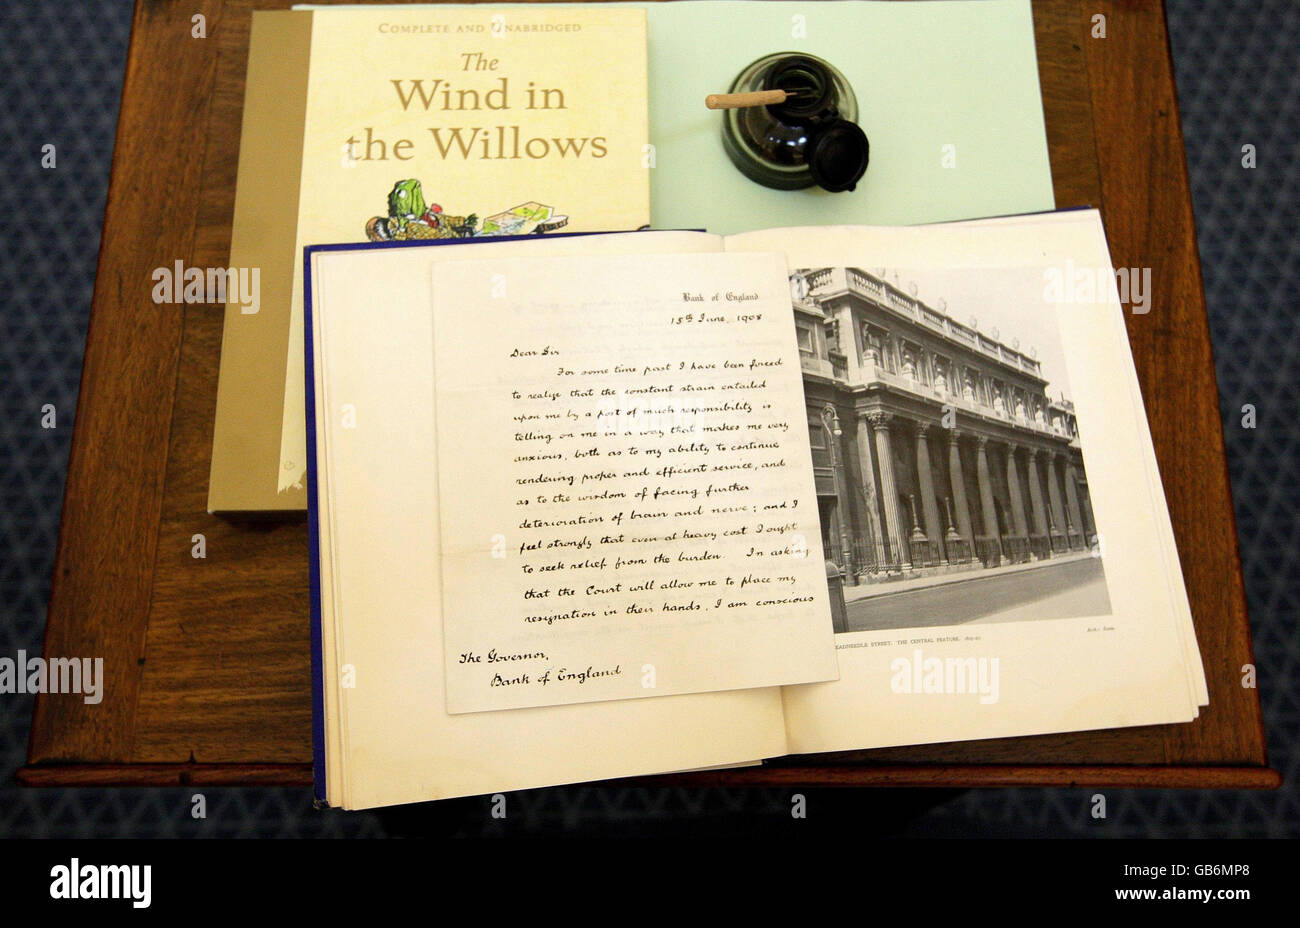 Una lettera di dimissioni scritta dall'autore di "The Wind in the Willows" Kenneth Grahame, che viene esposto al Museo della Banca d'Inghilterra da mercoledì 8 ottobre, nell'ambito di una nuova esposizione per celebrare il 100° anniversario della pubblicazione del libro. Foto Stock